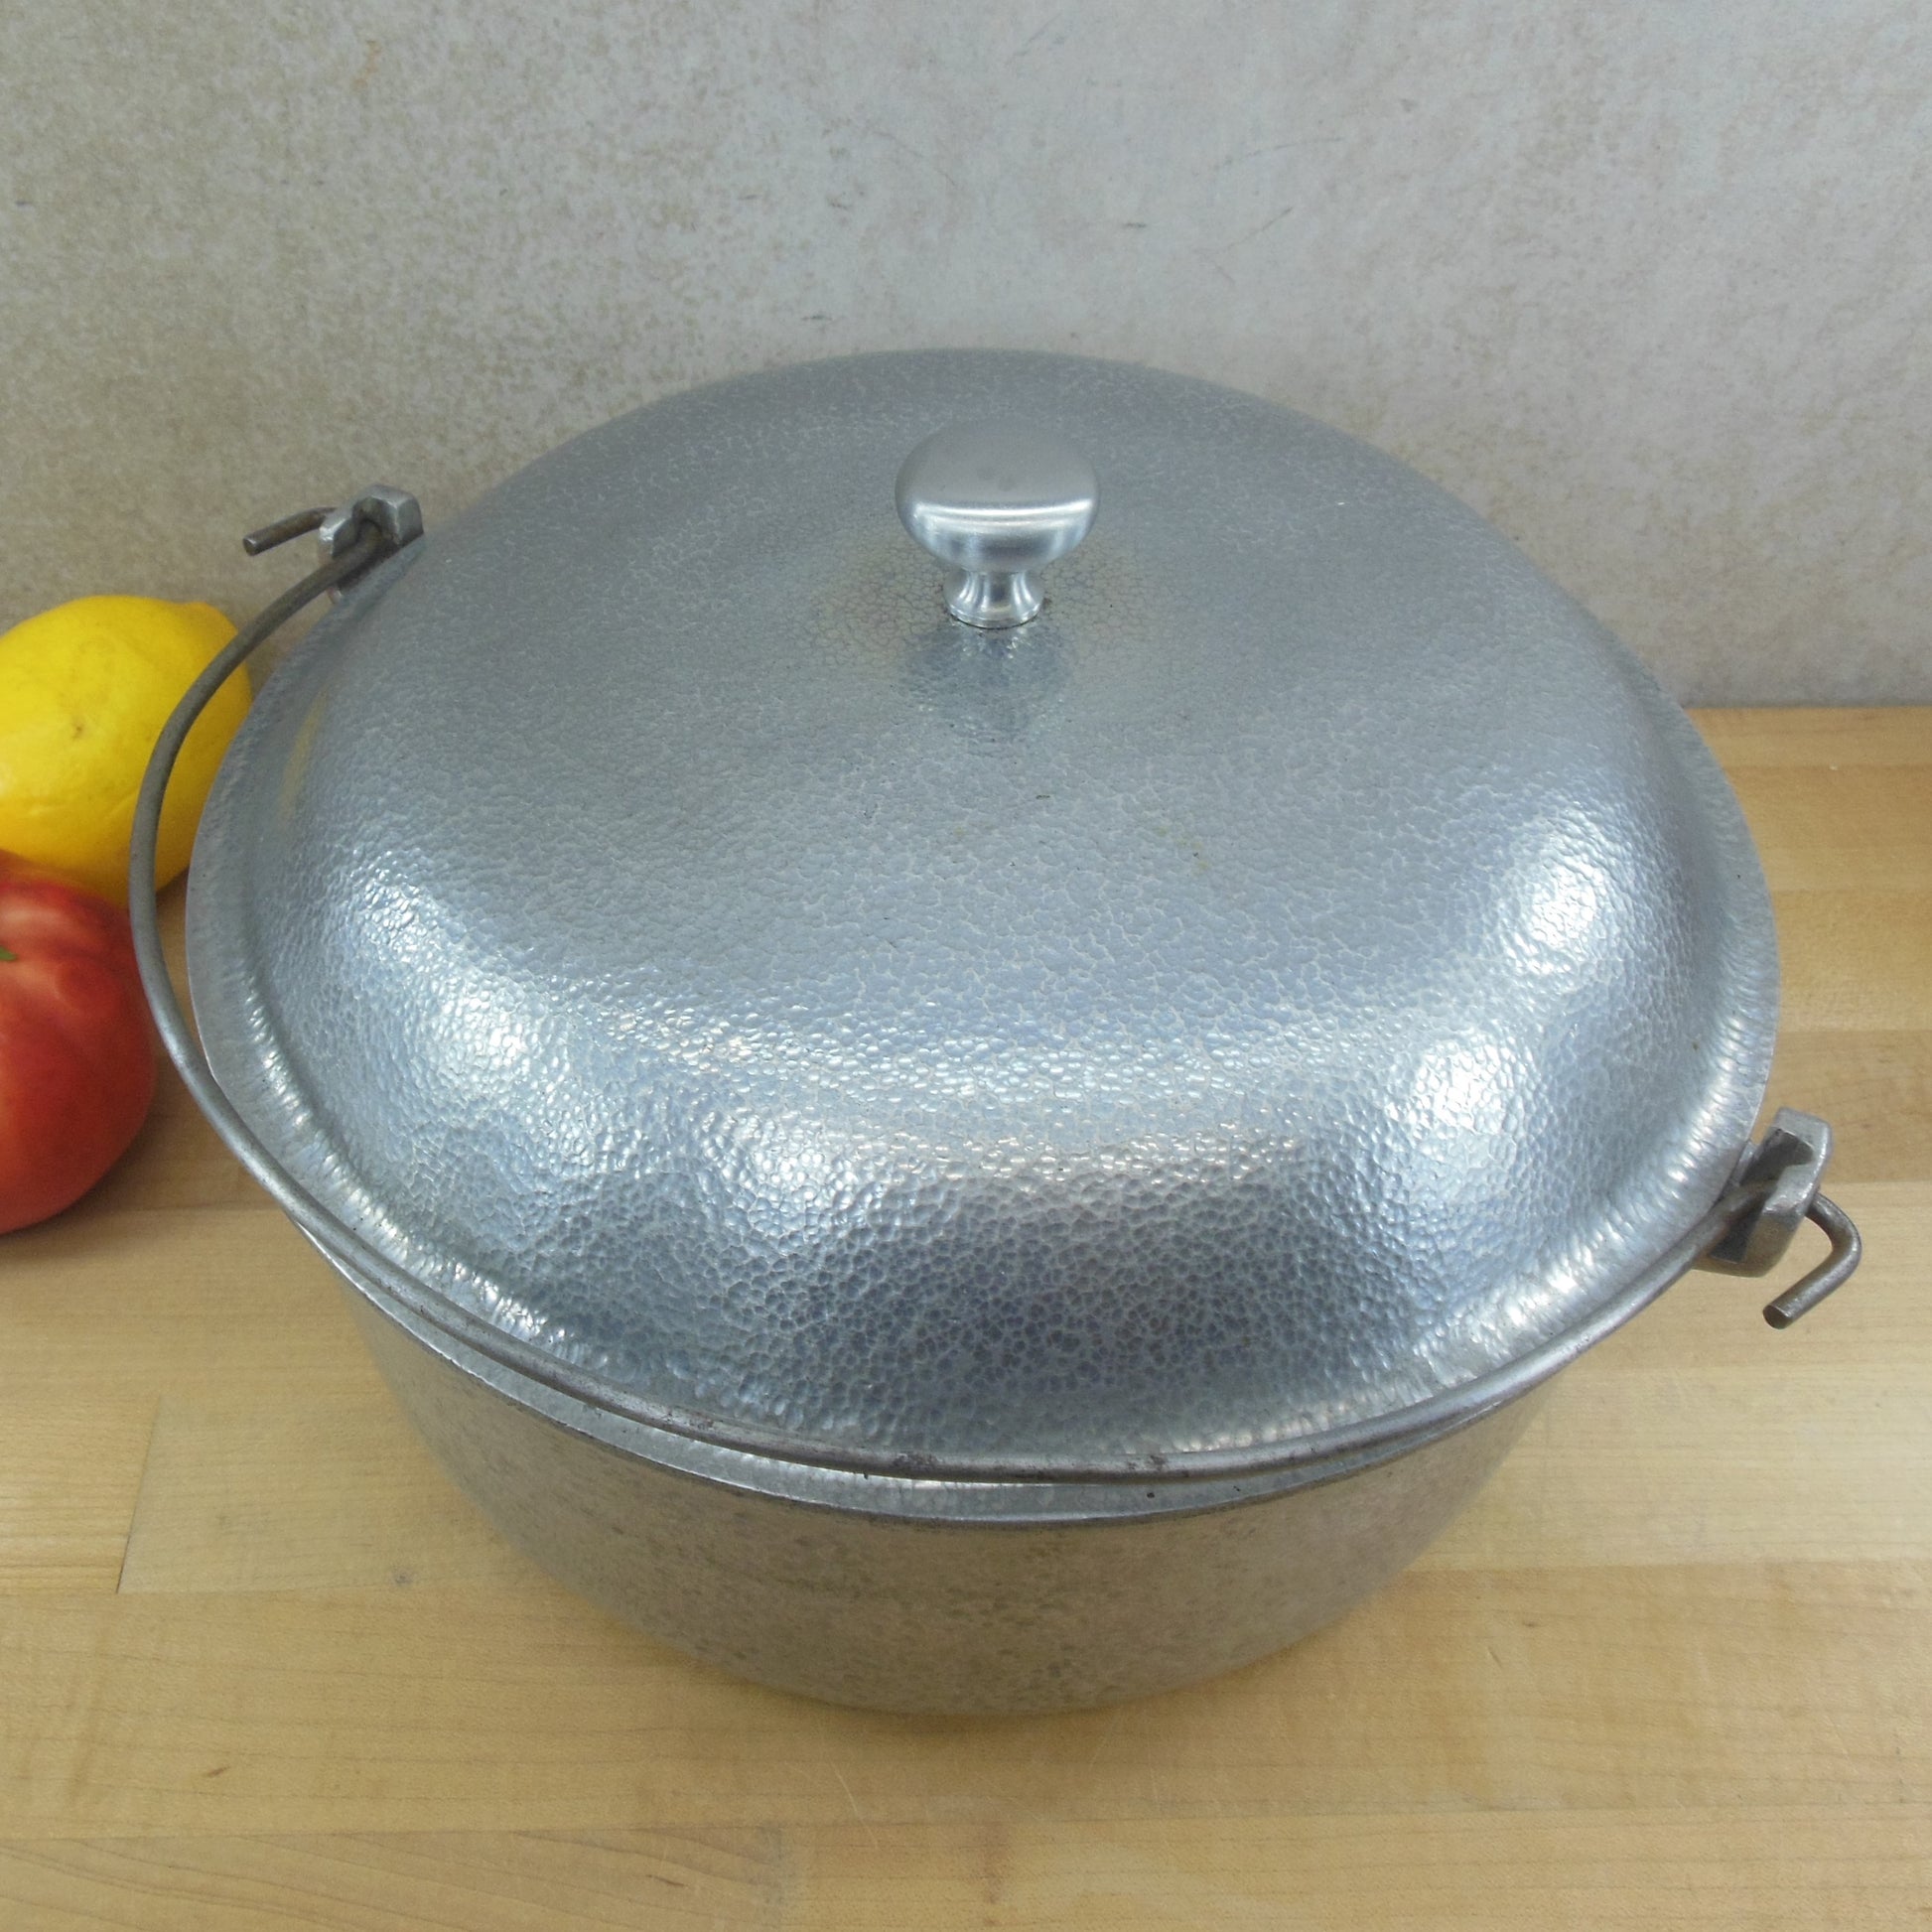 Club Aluminum Cookware Hammercraft 6 Quart Oval Roaster Pot